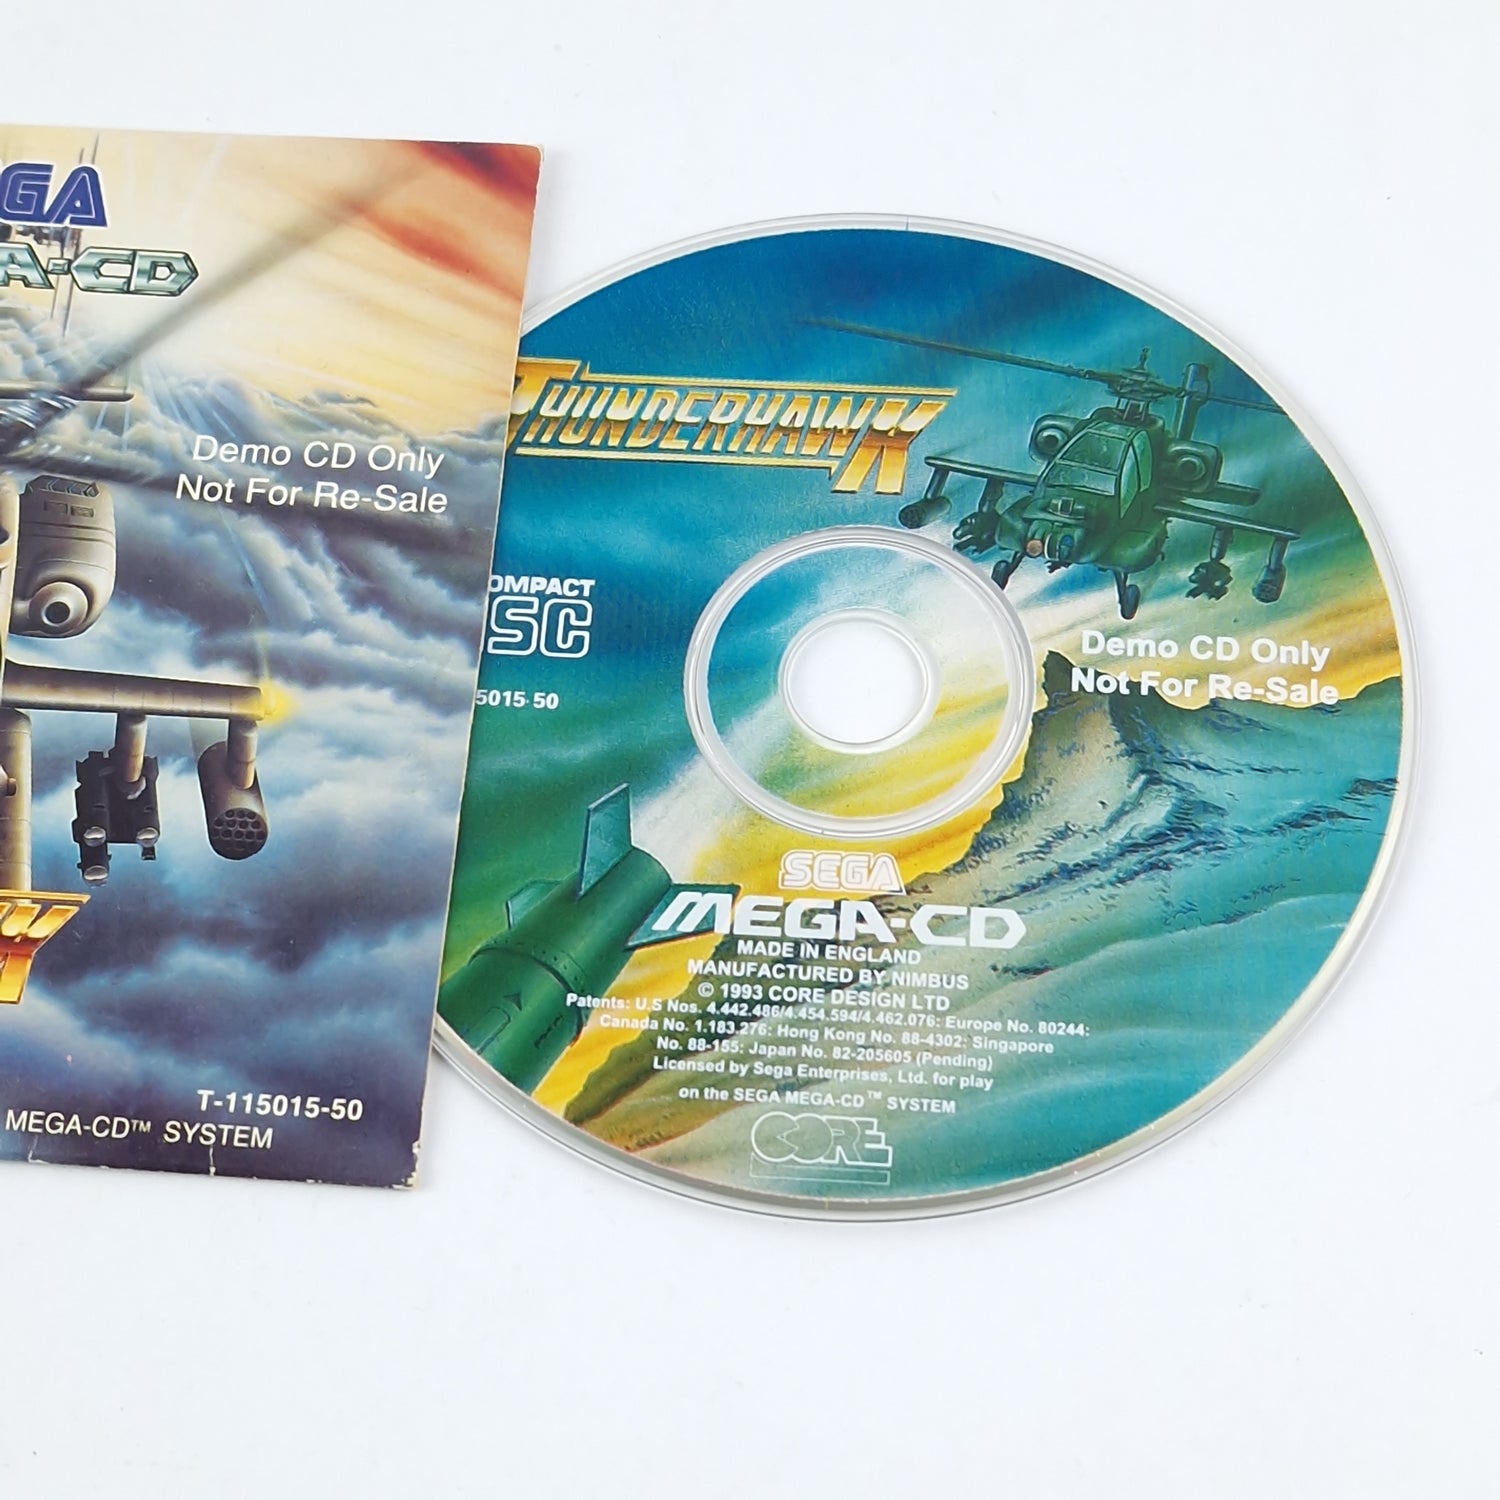 Sega Mega CD Game: Thunderhawk - OVP CD DEMO Version / Not for Re-Sale